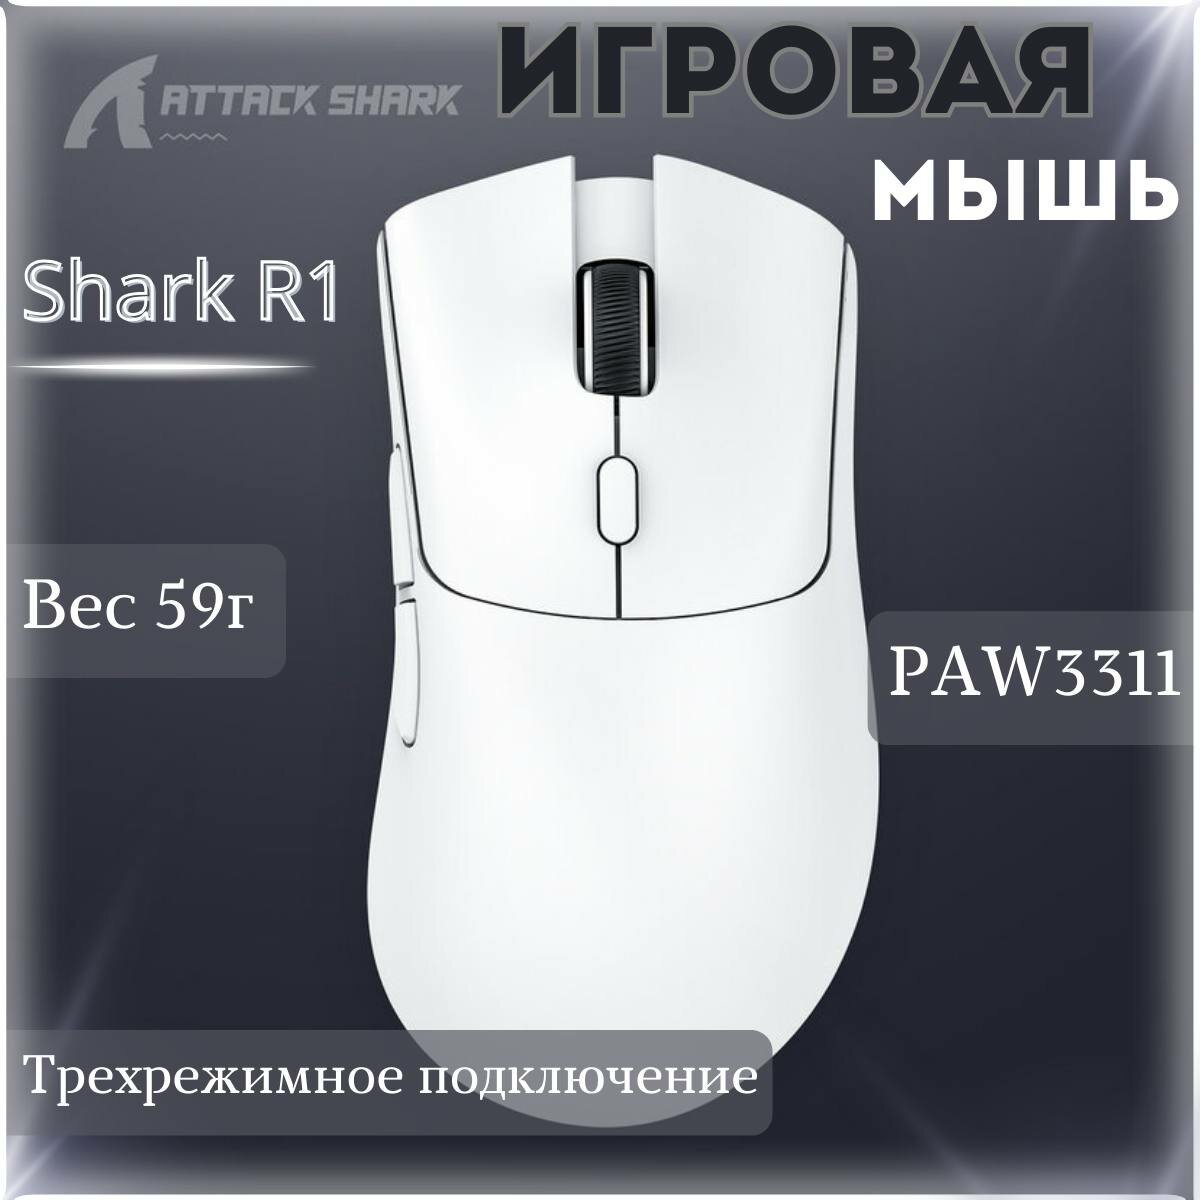 Мышь Attack Shark R1 белая, PAW3311, беспроводная